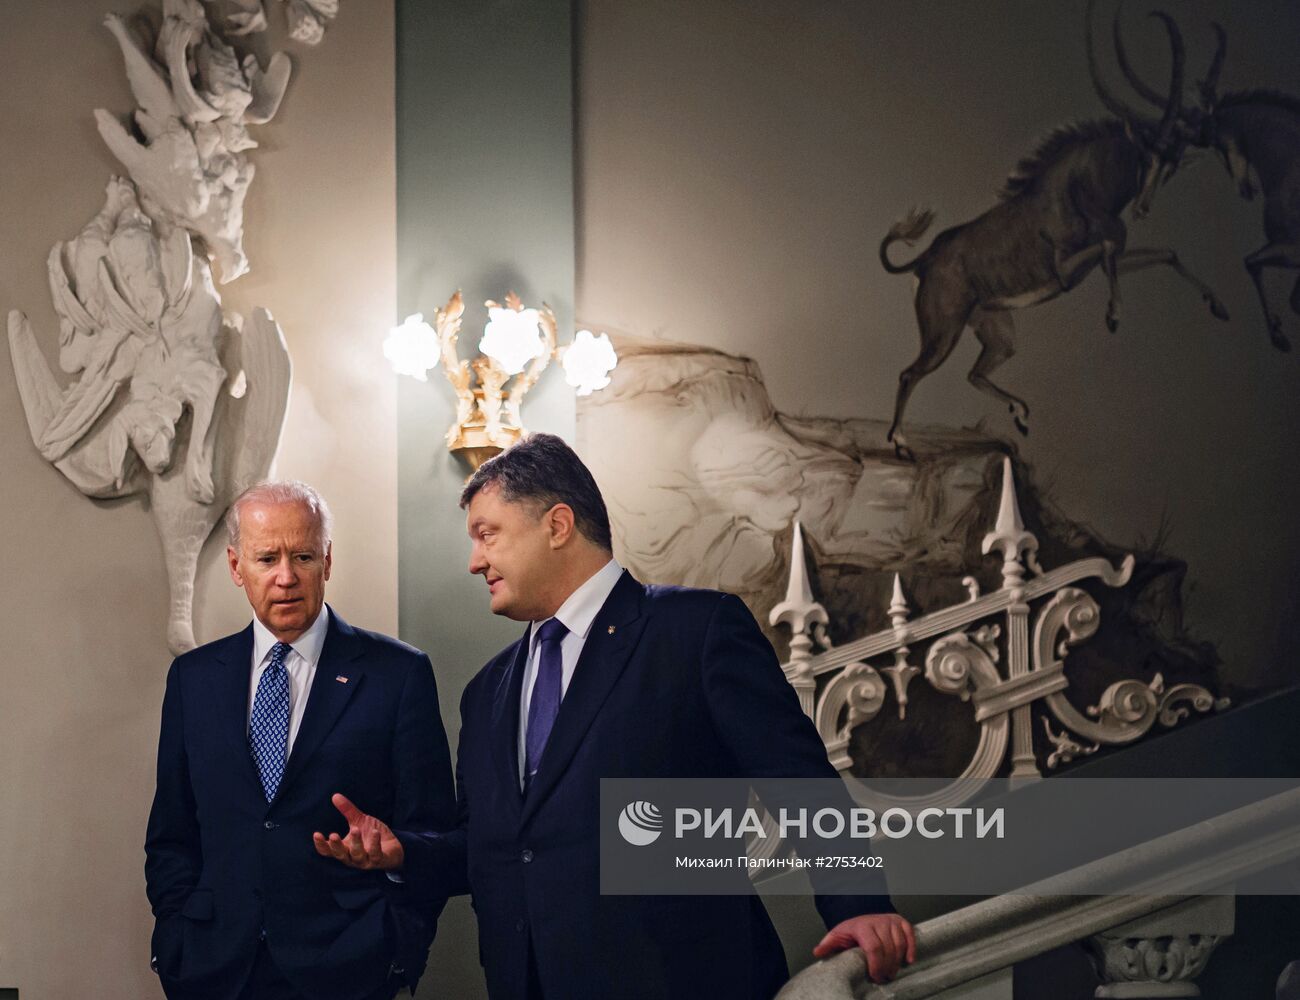 Встреча президента Украины П.Порошенко и вице-президента США Д.Байдена